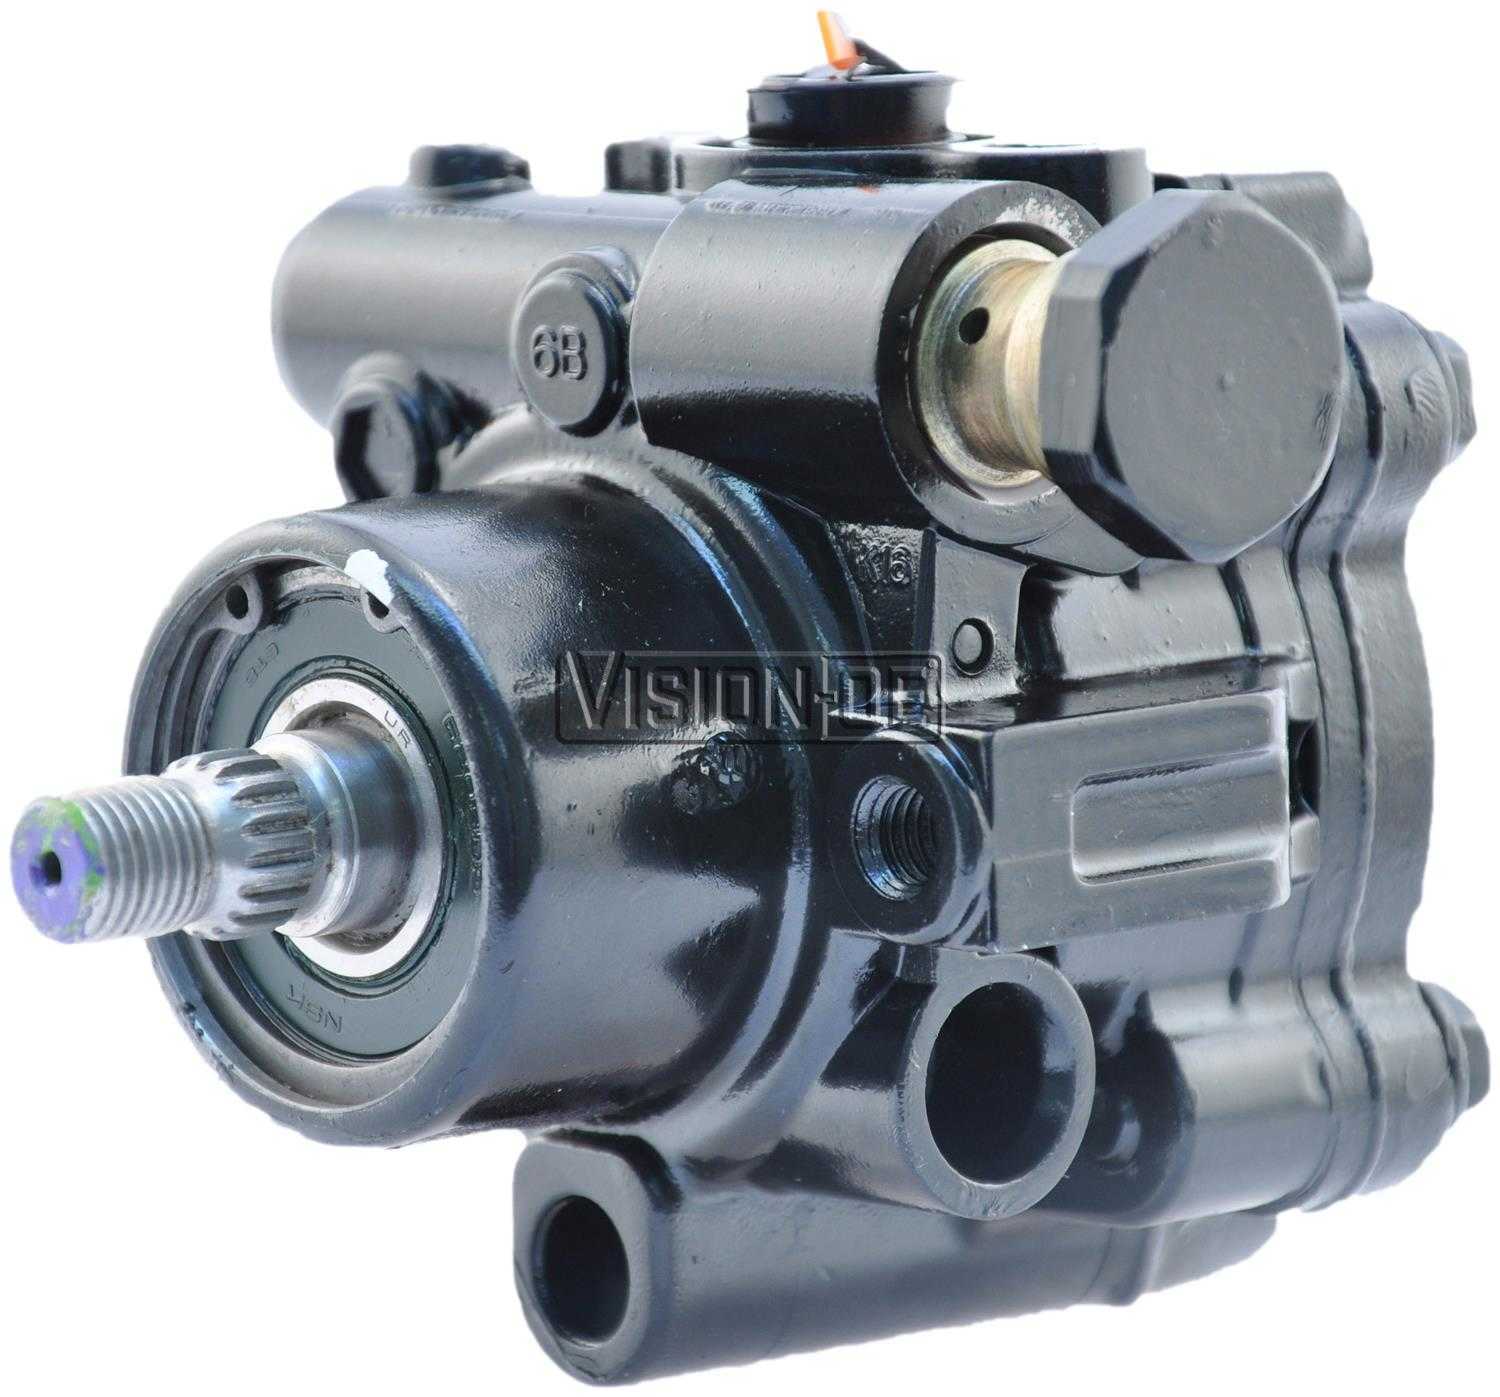 VISION-OE - Reman Power Steering Pump - VOE 990-0749